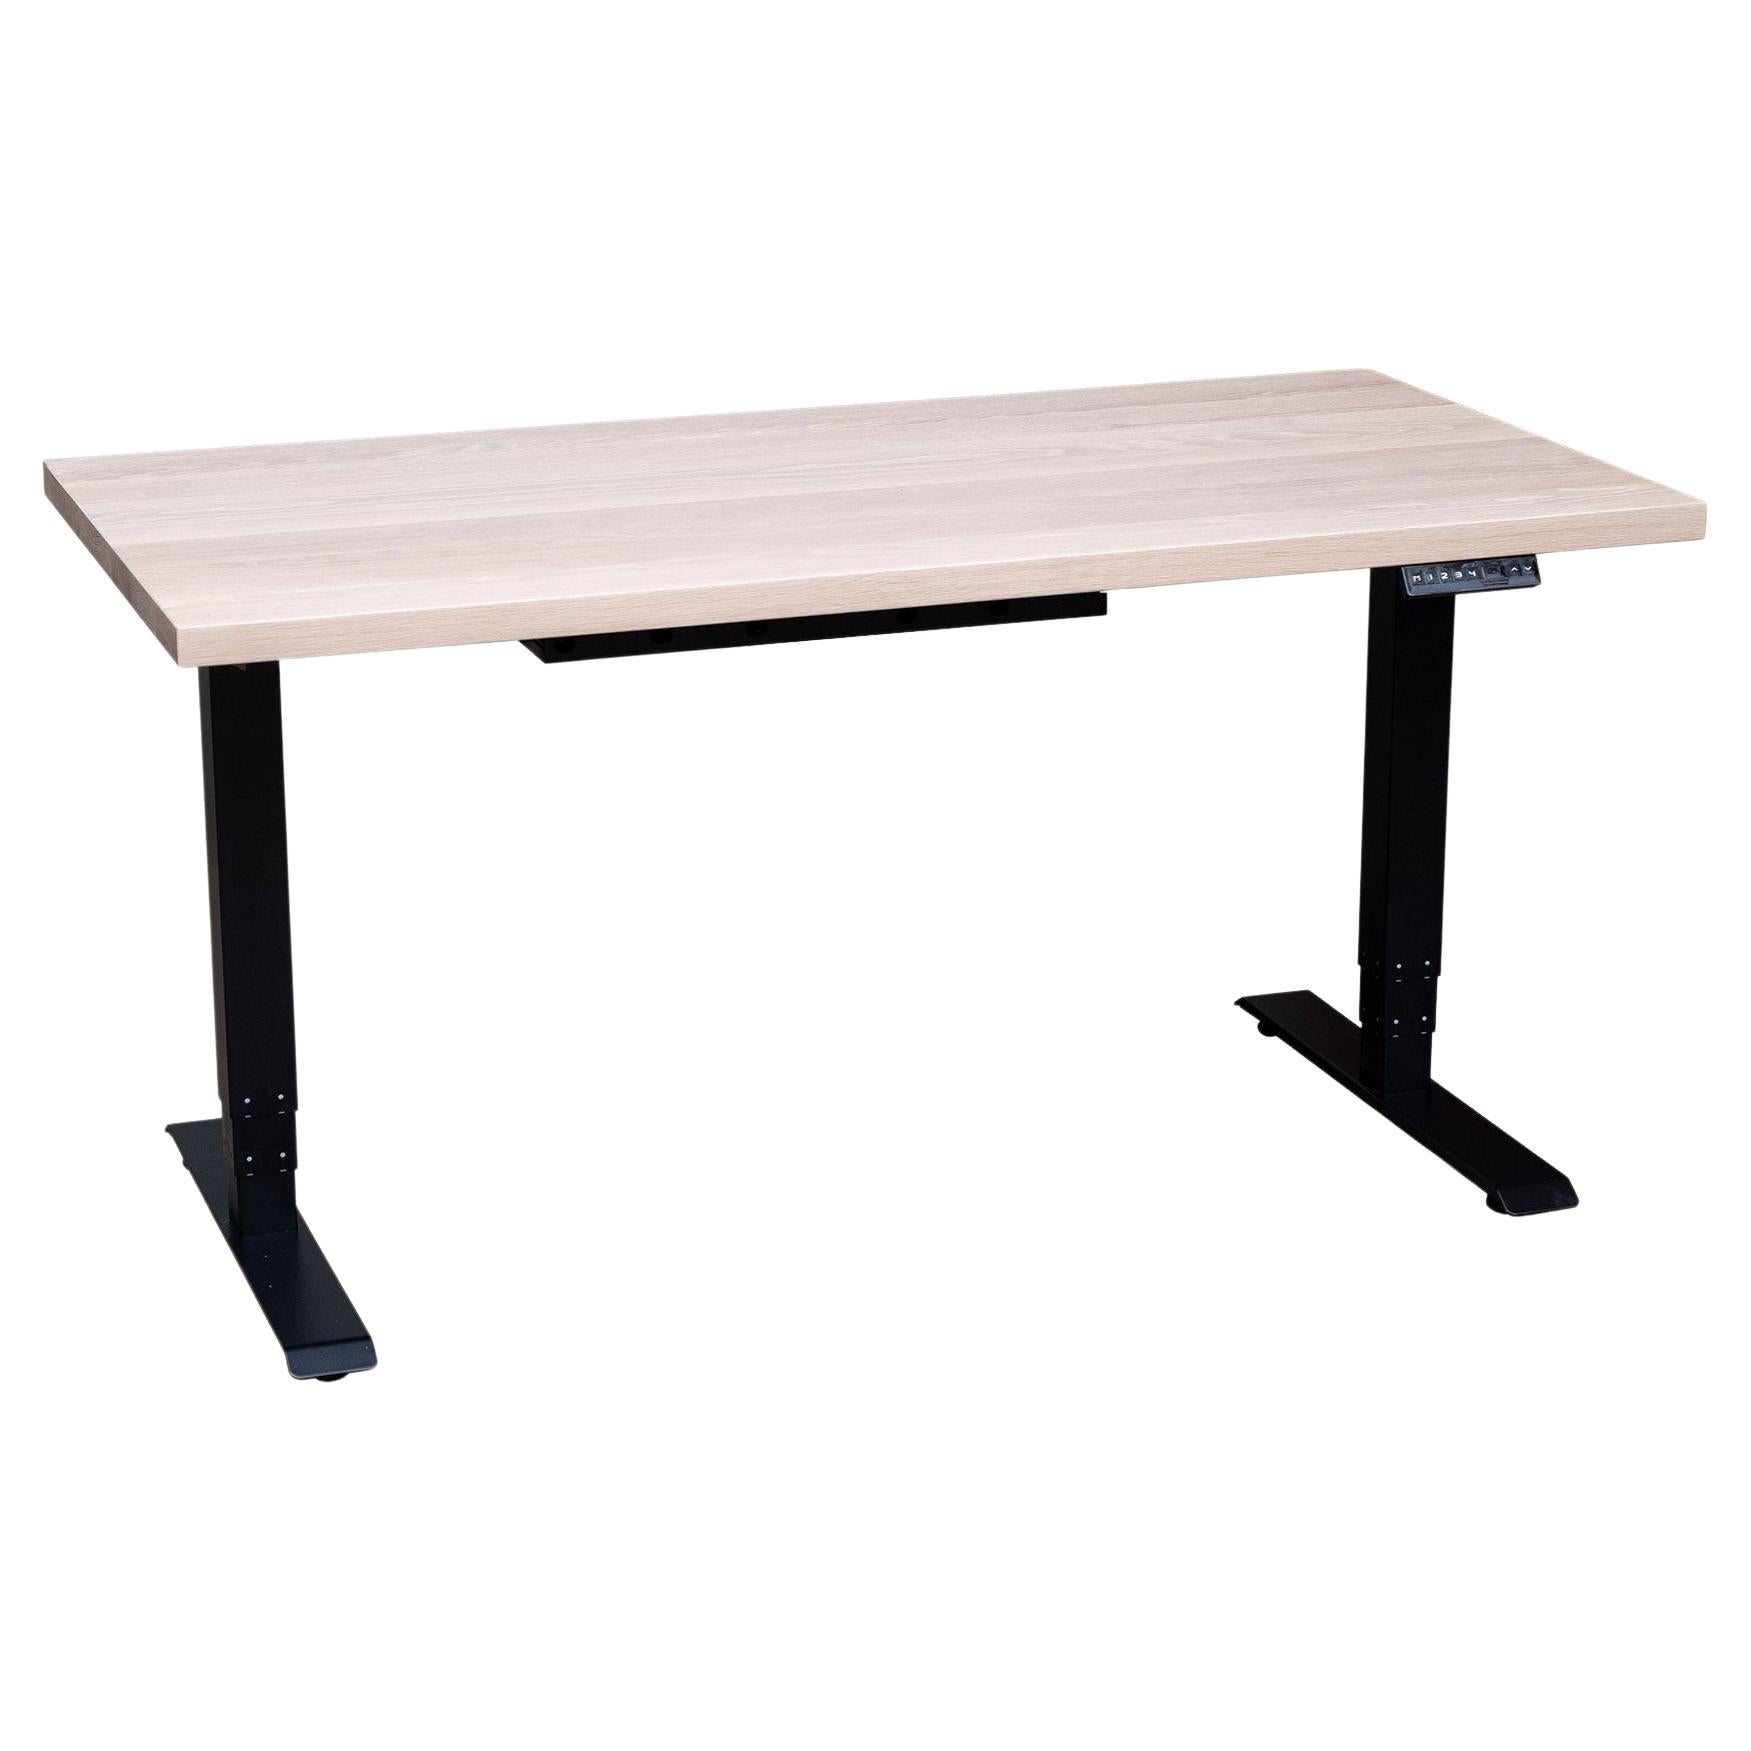 Siège/bureau d'appoint personnalisé « essentials Desk » avec plateau en bois massif et base en métal, petit